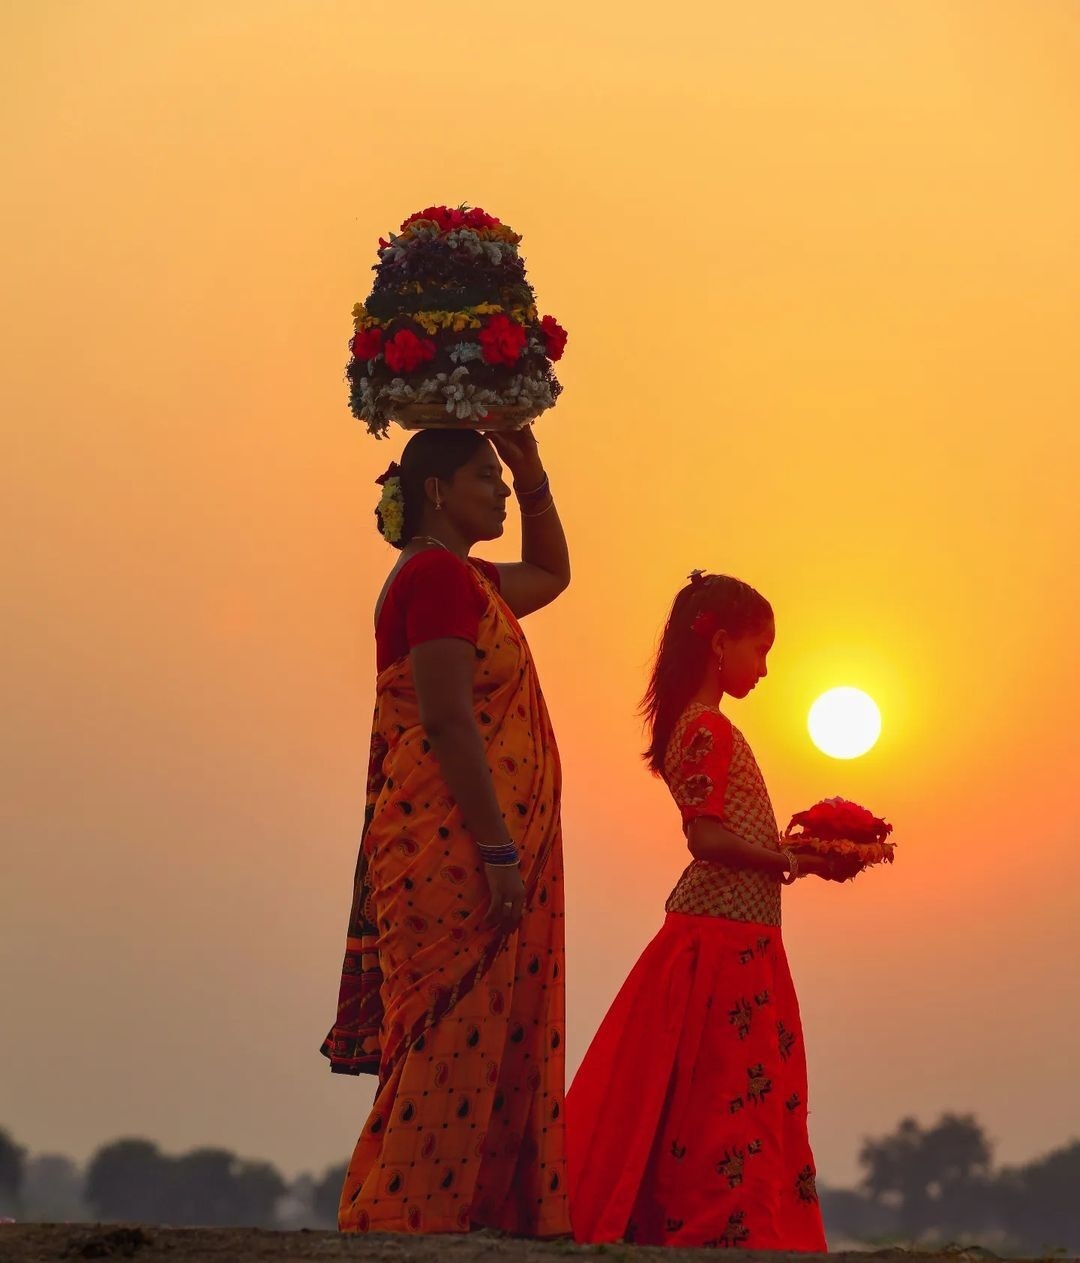 Ritual Bathukamma melibatkan tarian di sekitar tumpukan bunga dan dirayakan dengan kemegahan di Telangana.